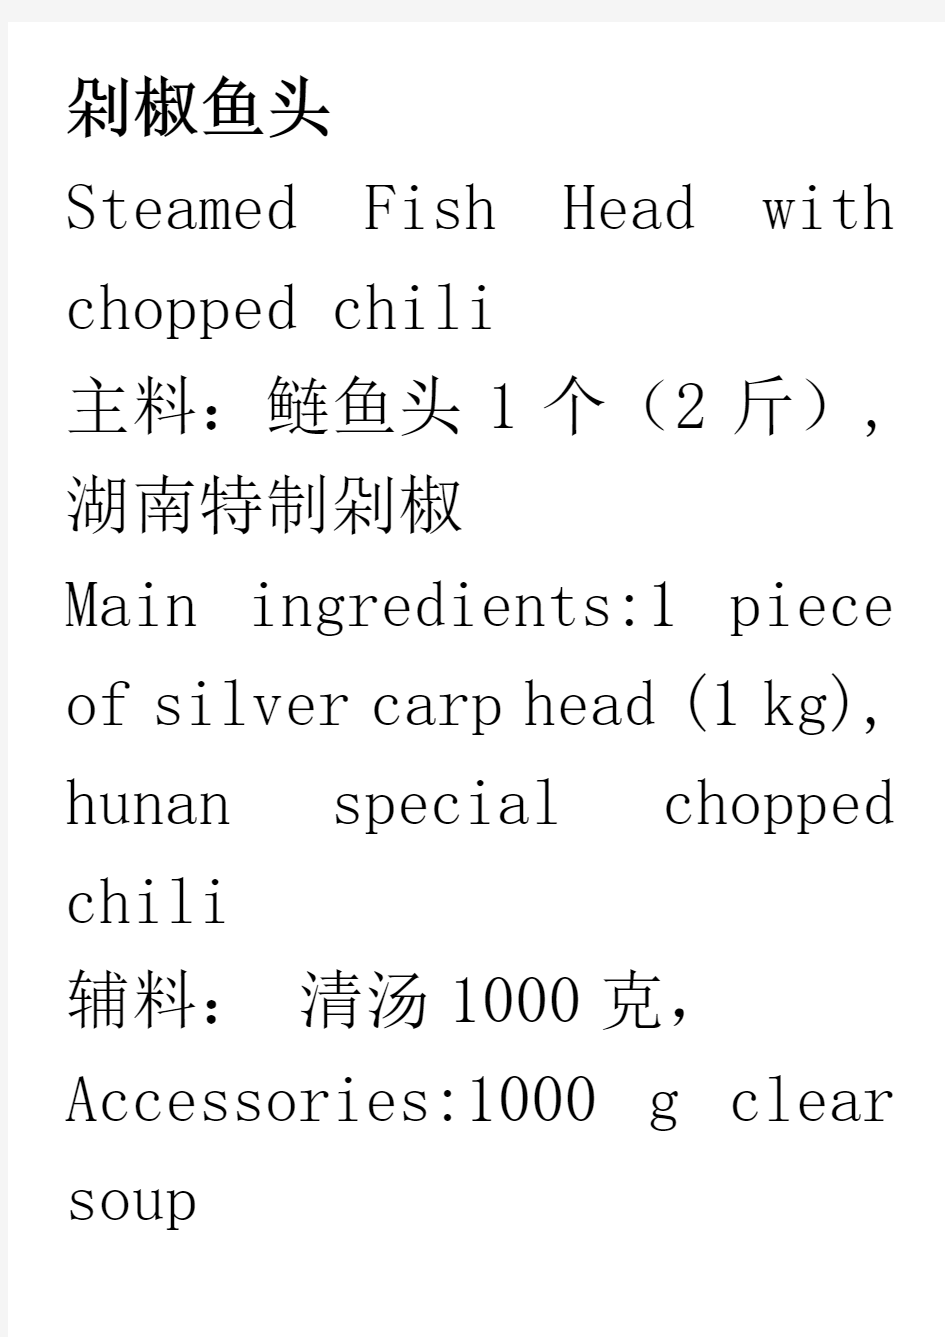 剁椒鱼头菜谱食谱中英文对照中餐西餐